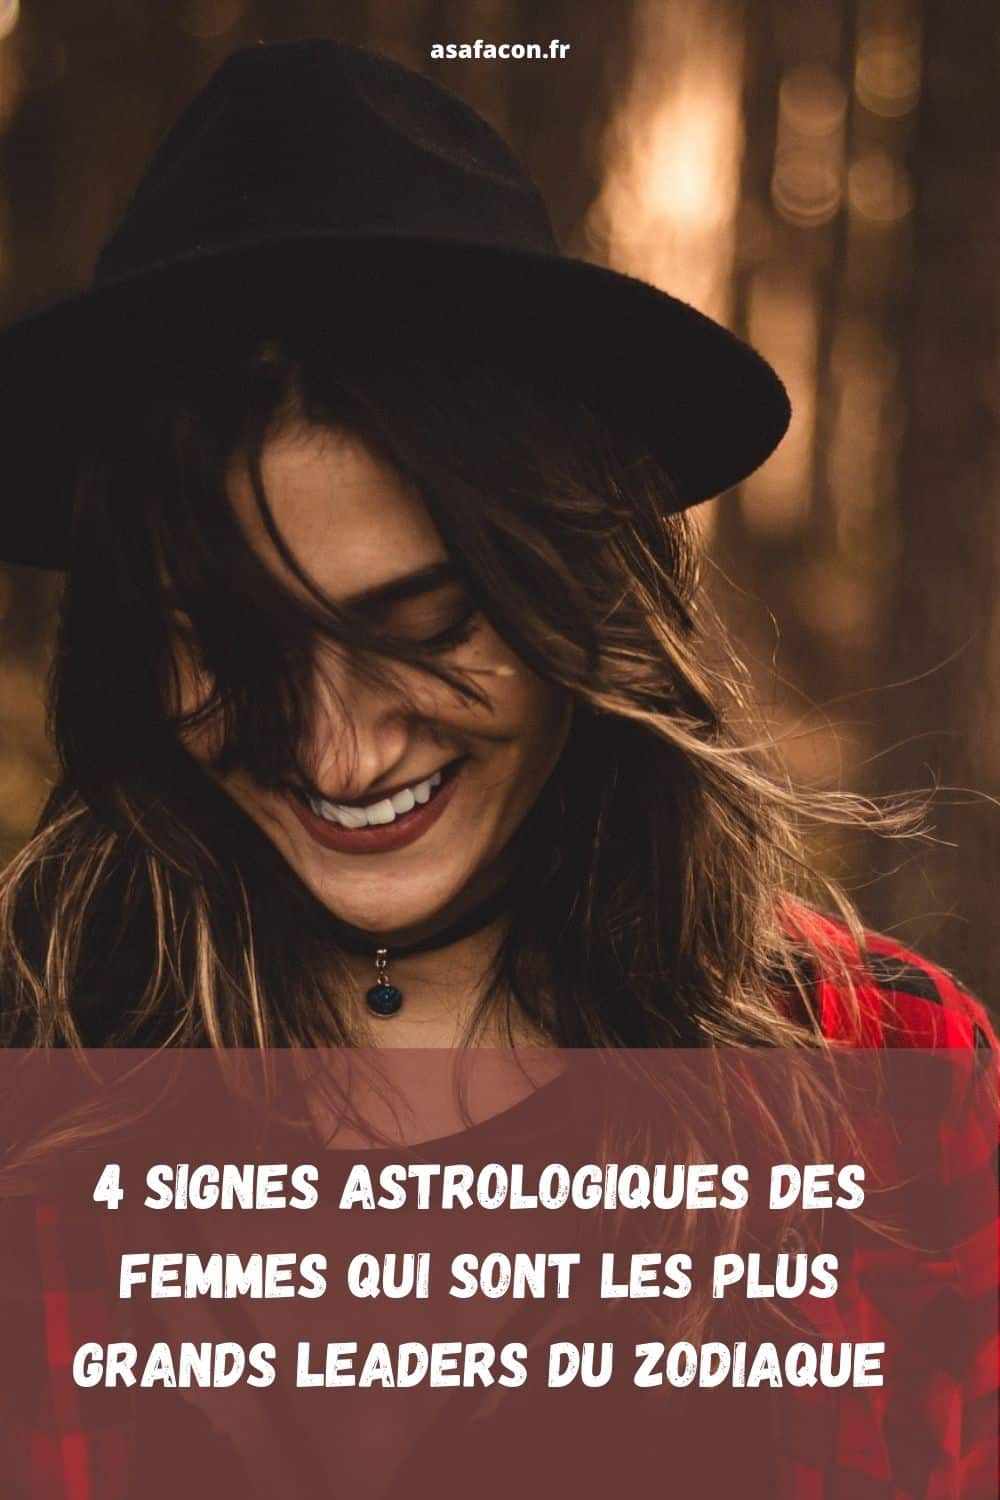 4 Signes Astrologiques Des Femmes Qui Sont Les Plus Grands Leaders Du Zodiaque